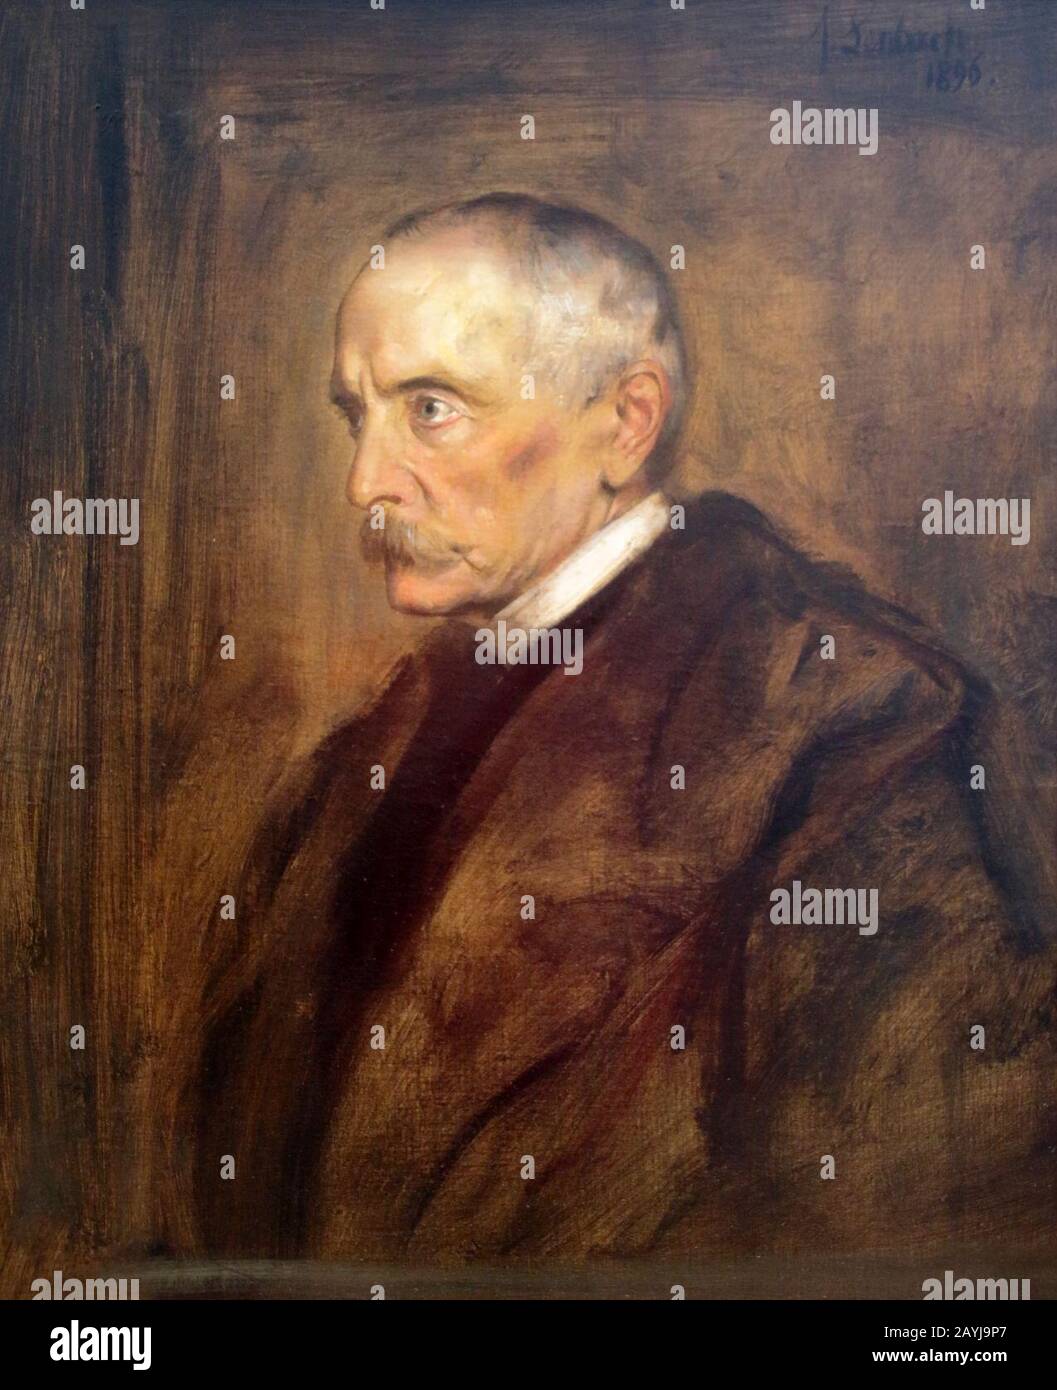 Franz von Lenbach (Schrobenhausen, 13 novembre 1836 – Monaco di Baviera, 6 maggio 1904) - principe di Hohenlohe - Chlodwig zu Hohenlohe-Schilingsfürst (1896) Banque D'Images